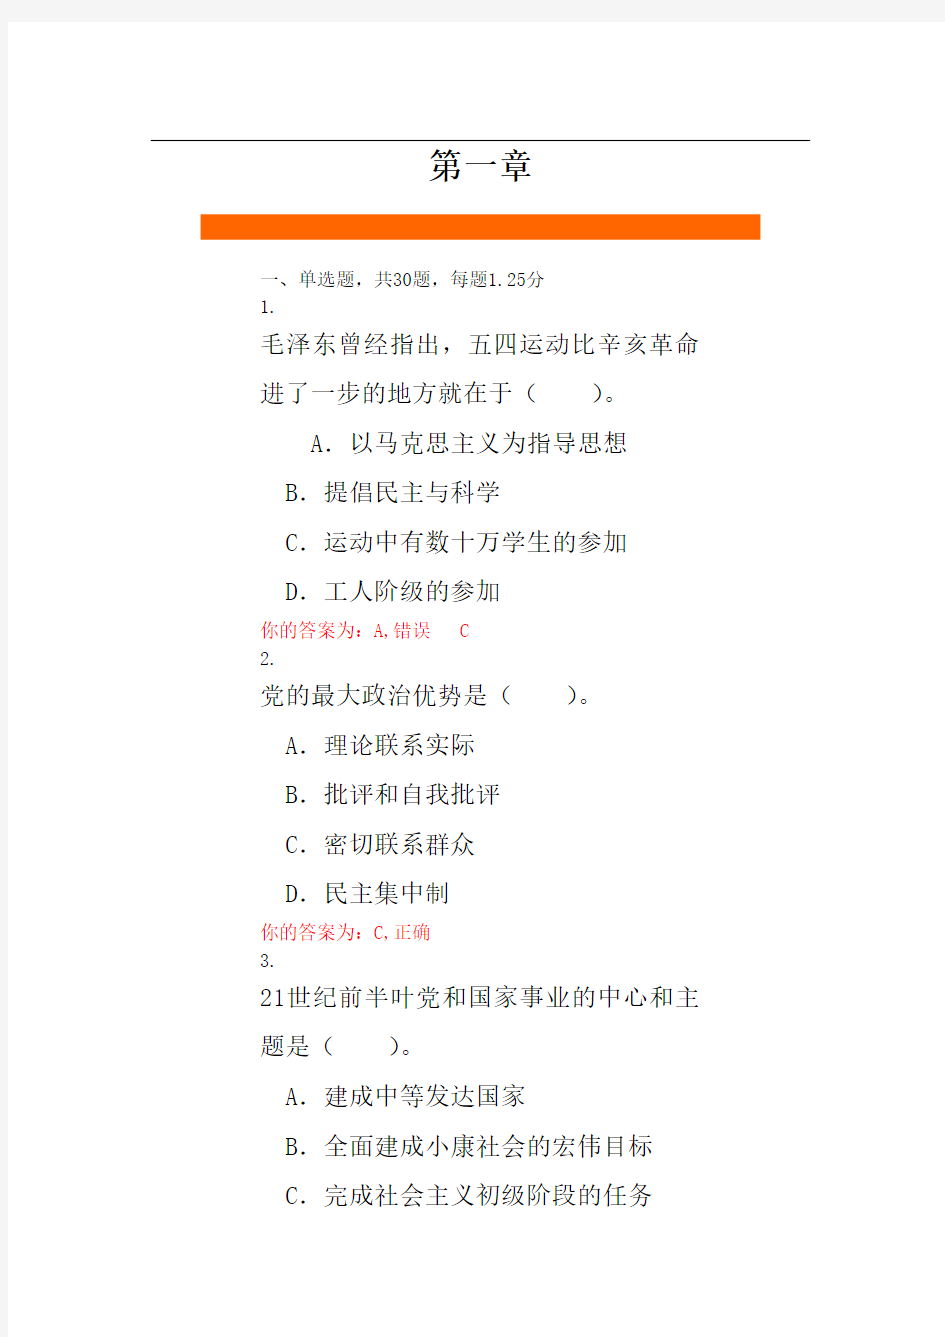 2014年云南农业大学党课系统升级后答案(完全版)